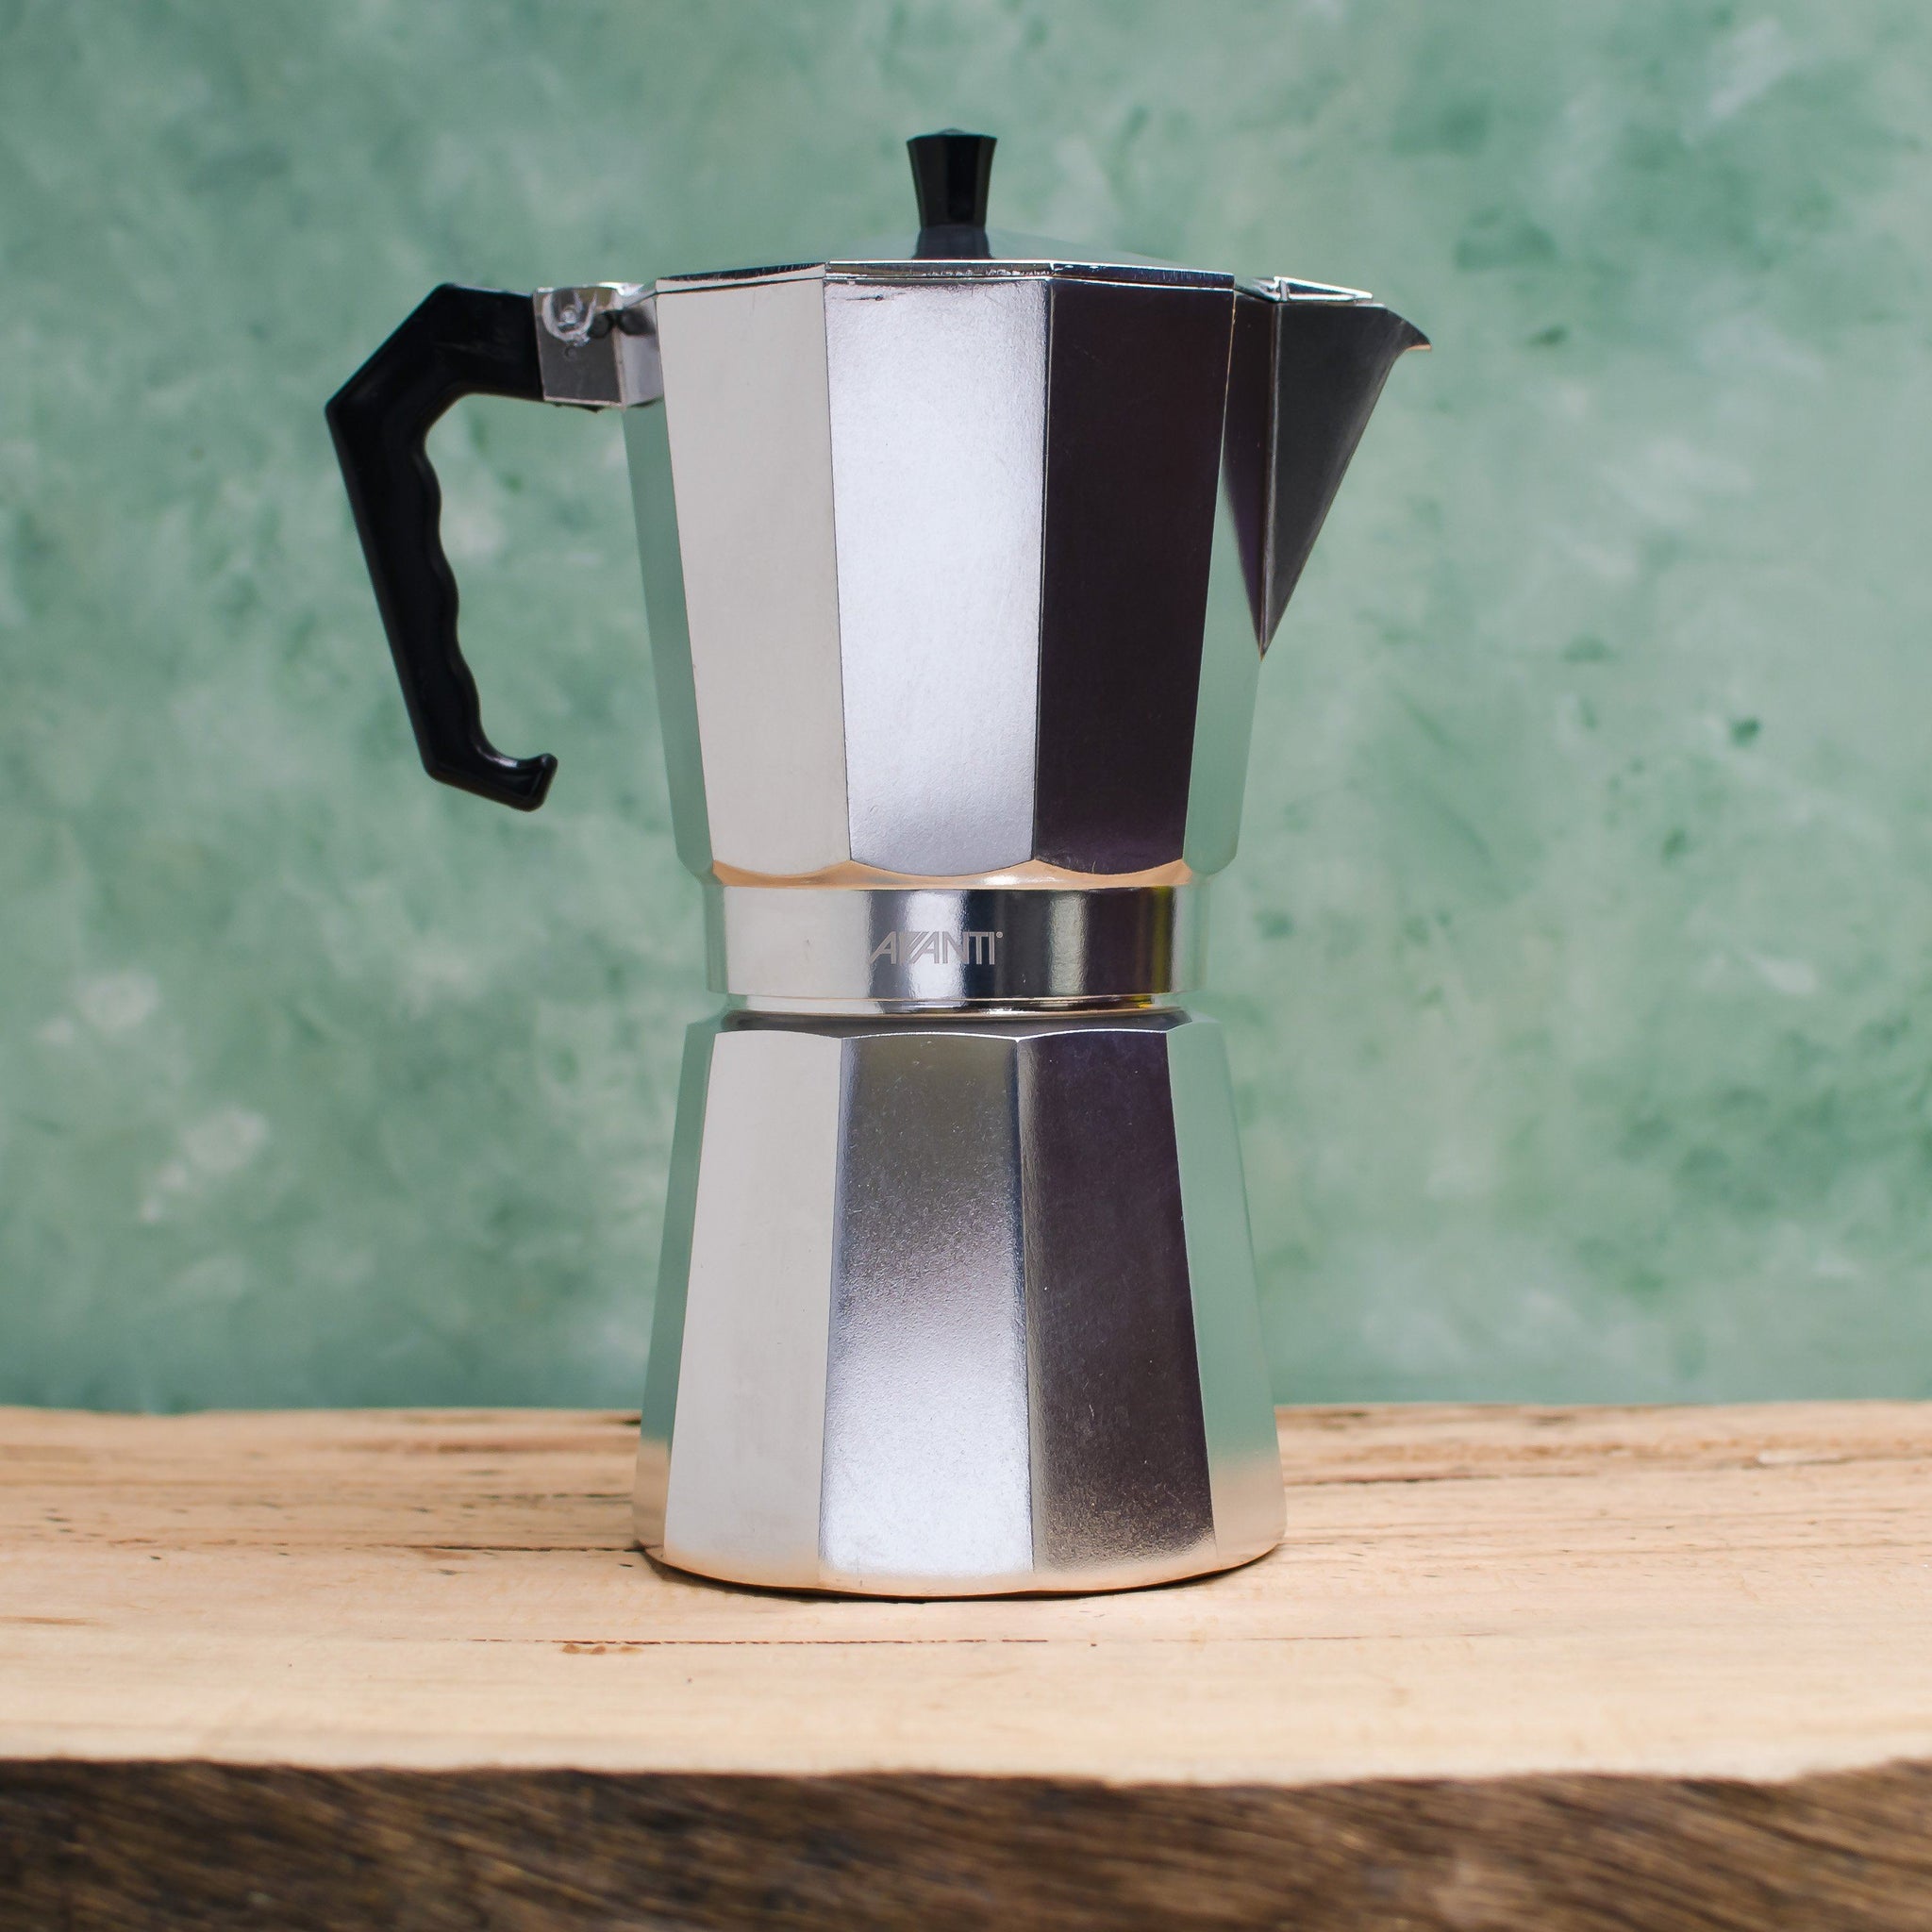 Primula Stovetop Espresso and Coffee Maker, Moka Pot for Classic